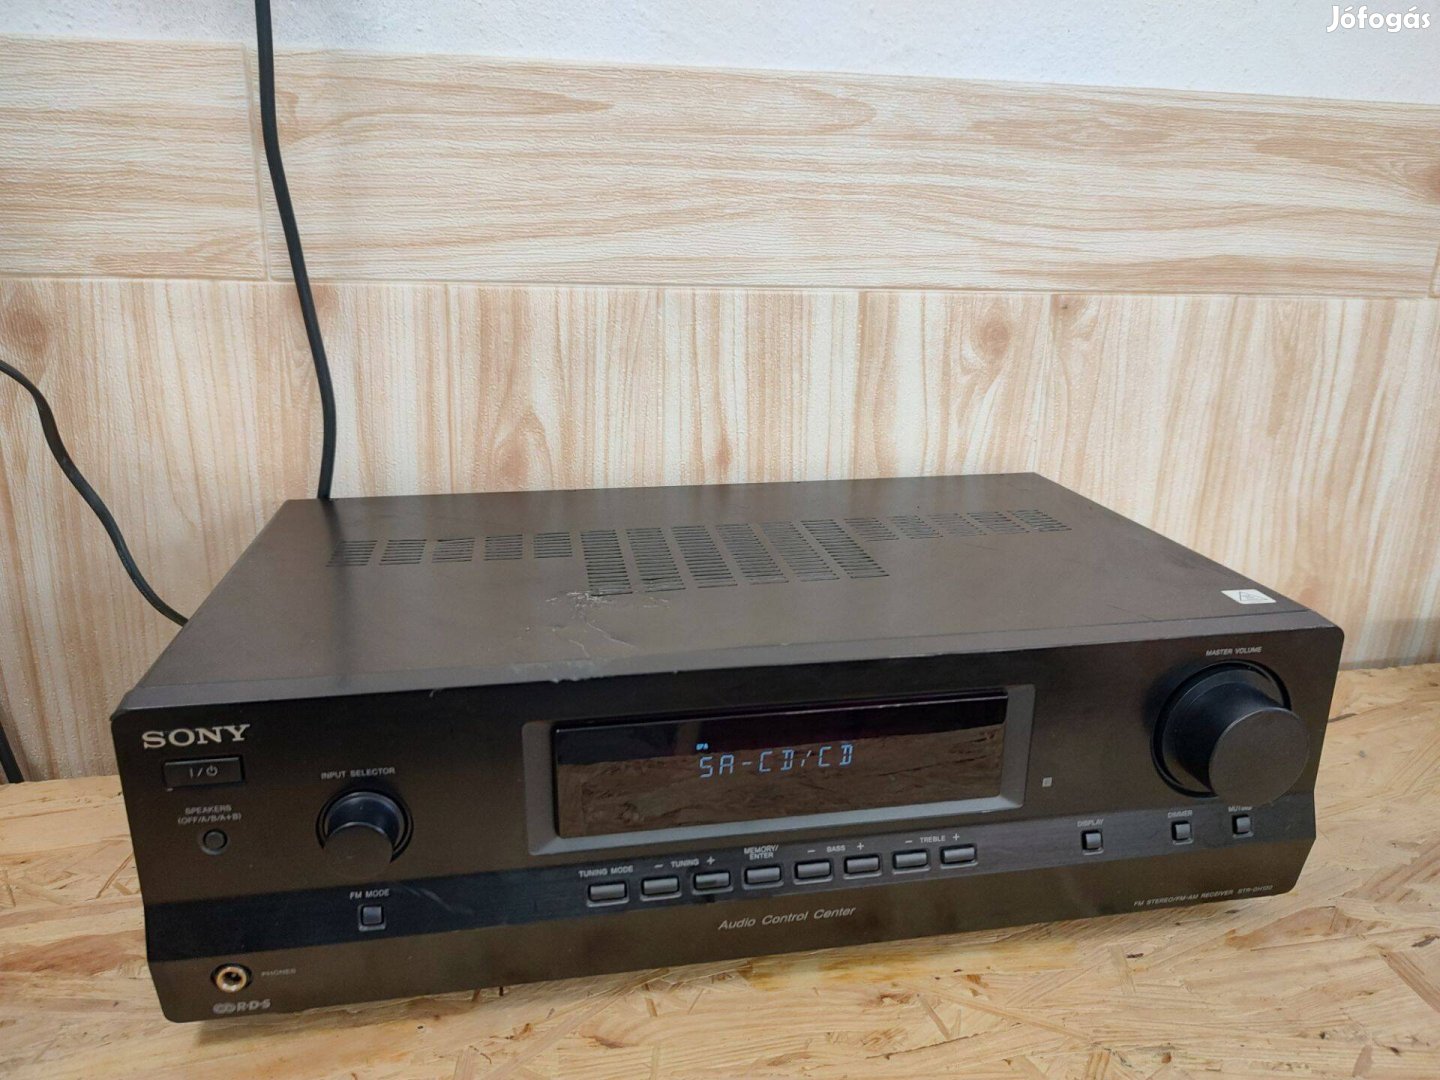 Sony STR-DH130 rádiós erősítő, átvizsgált,hibátlanul működő állapotban